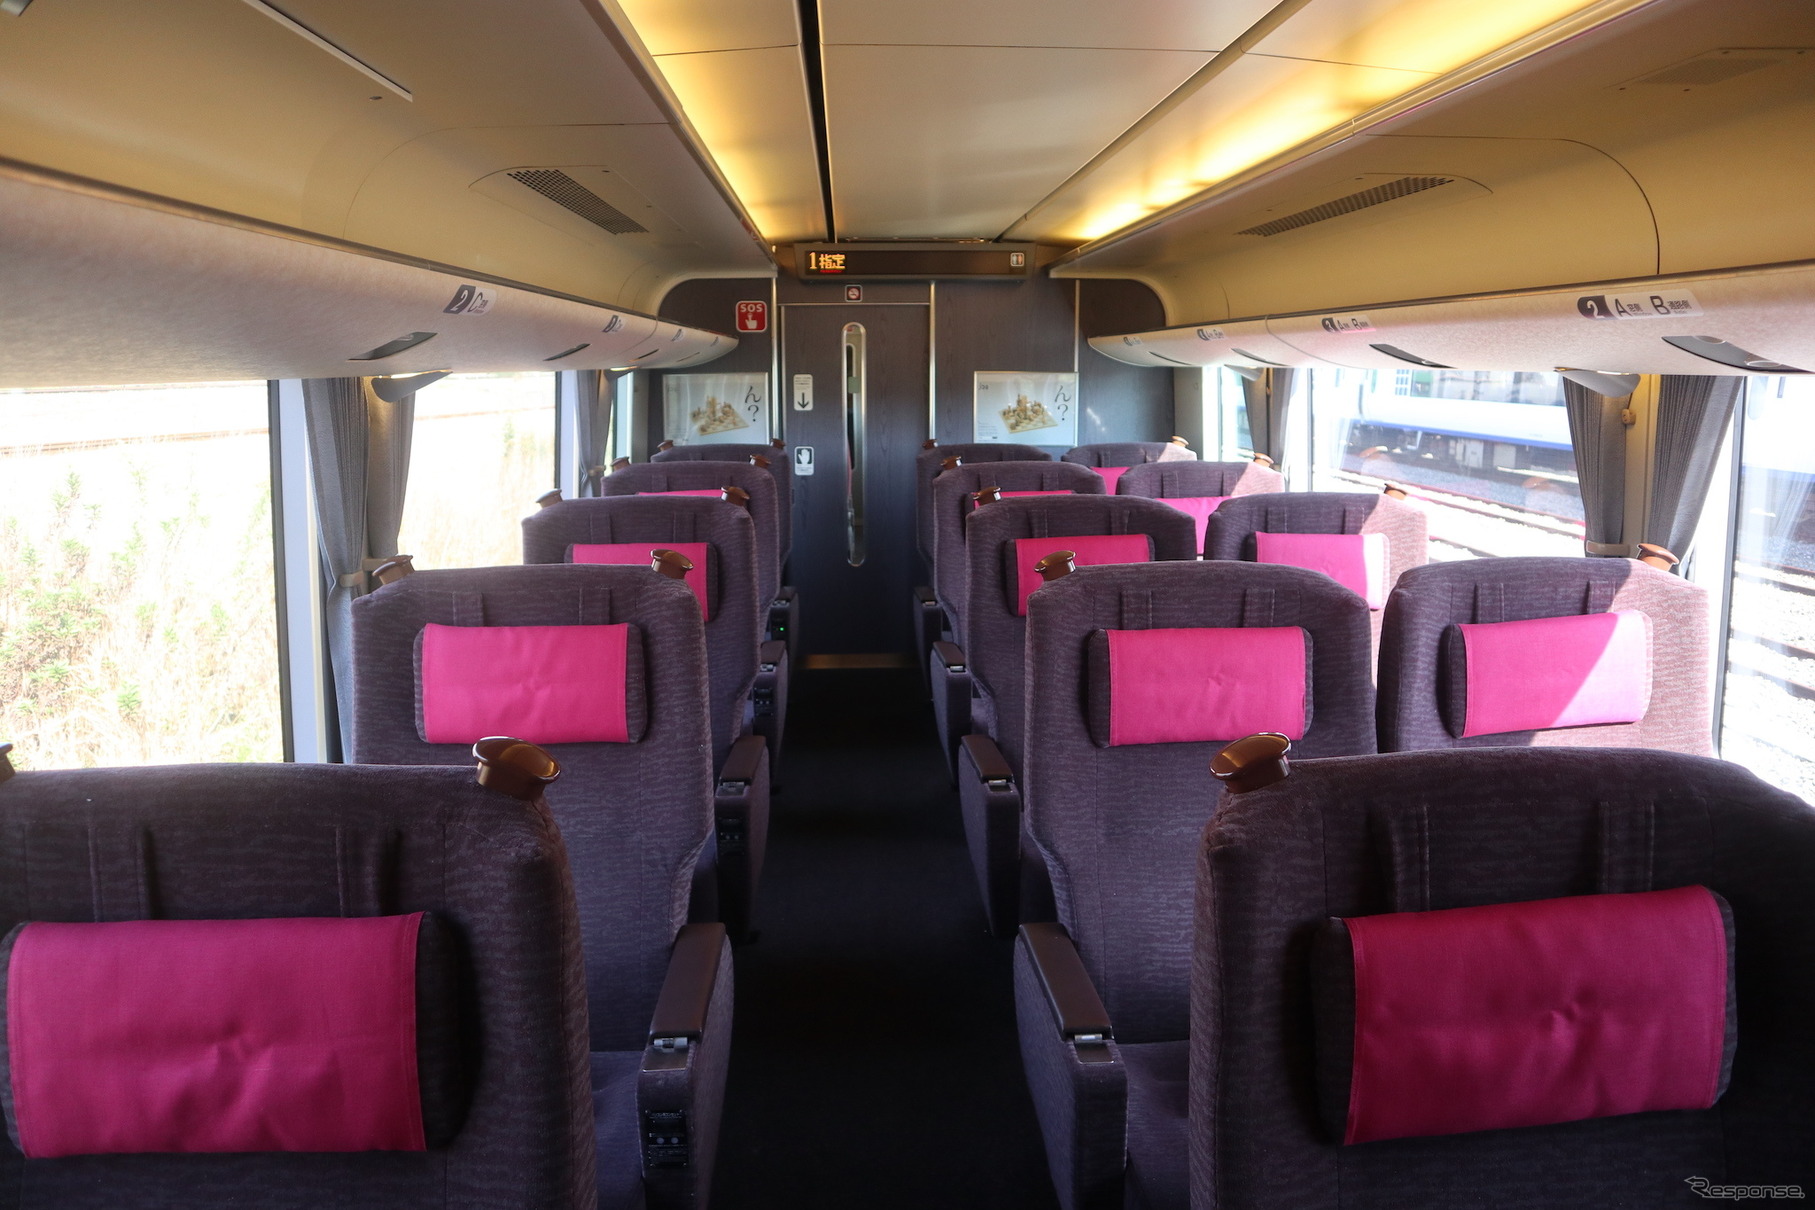 2019年4月1日から梱包なしの刃物類は、JRの旅客列車では持込み禁止となる。写真はJR西日本289系特急型電車のグリーン車車内。